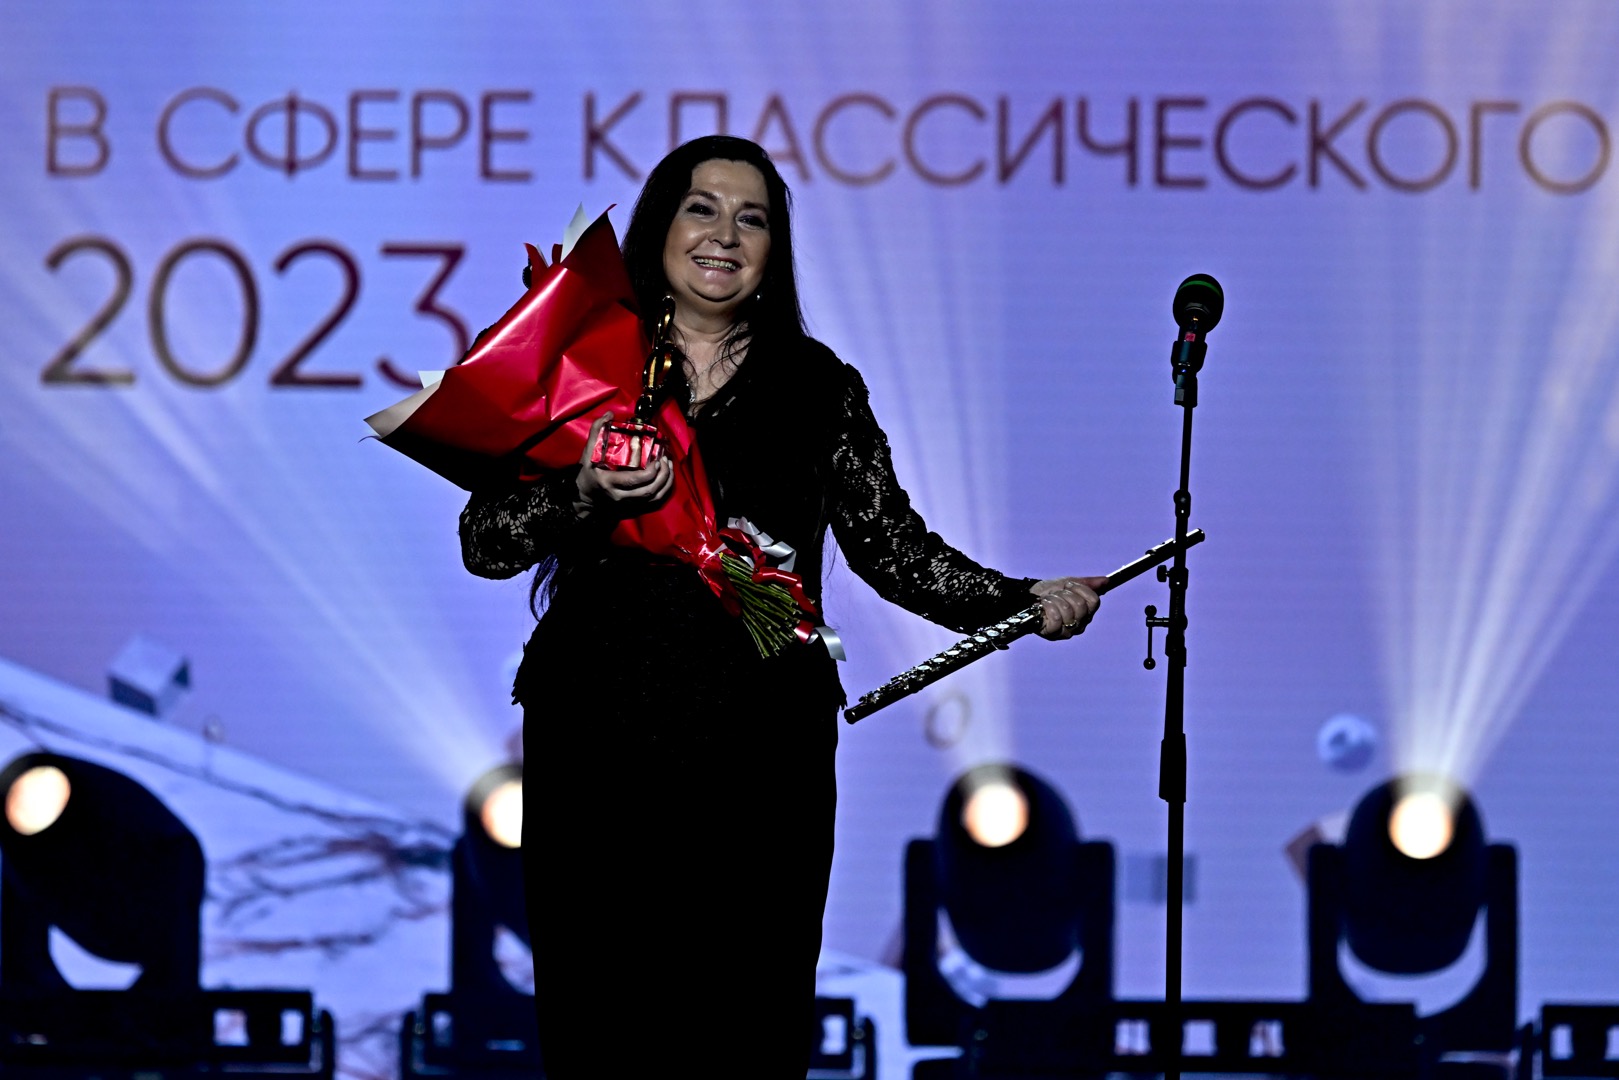 Ünlü Türk flüt sanatçısı Kutluer, Rusya'da ''BraVo'' müzik ödülünü aldı